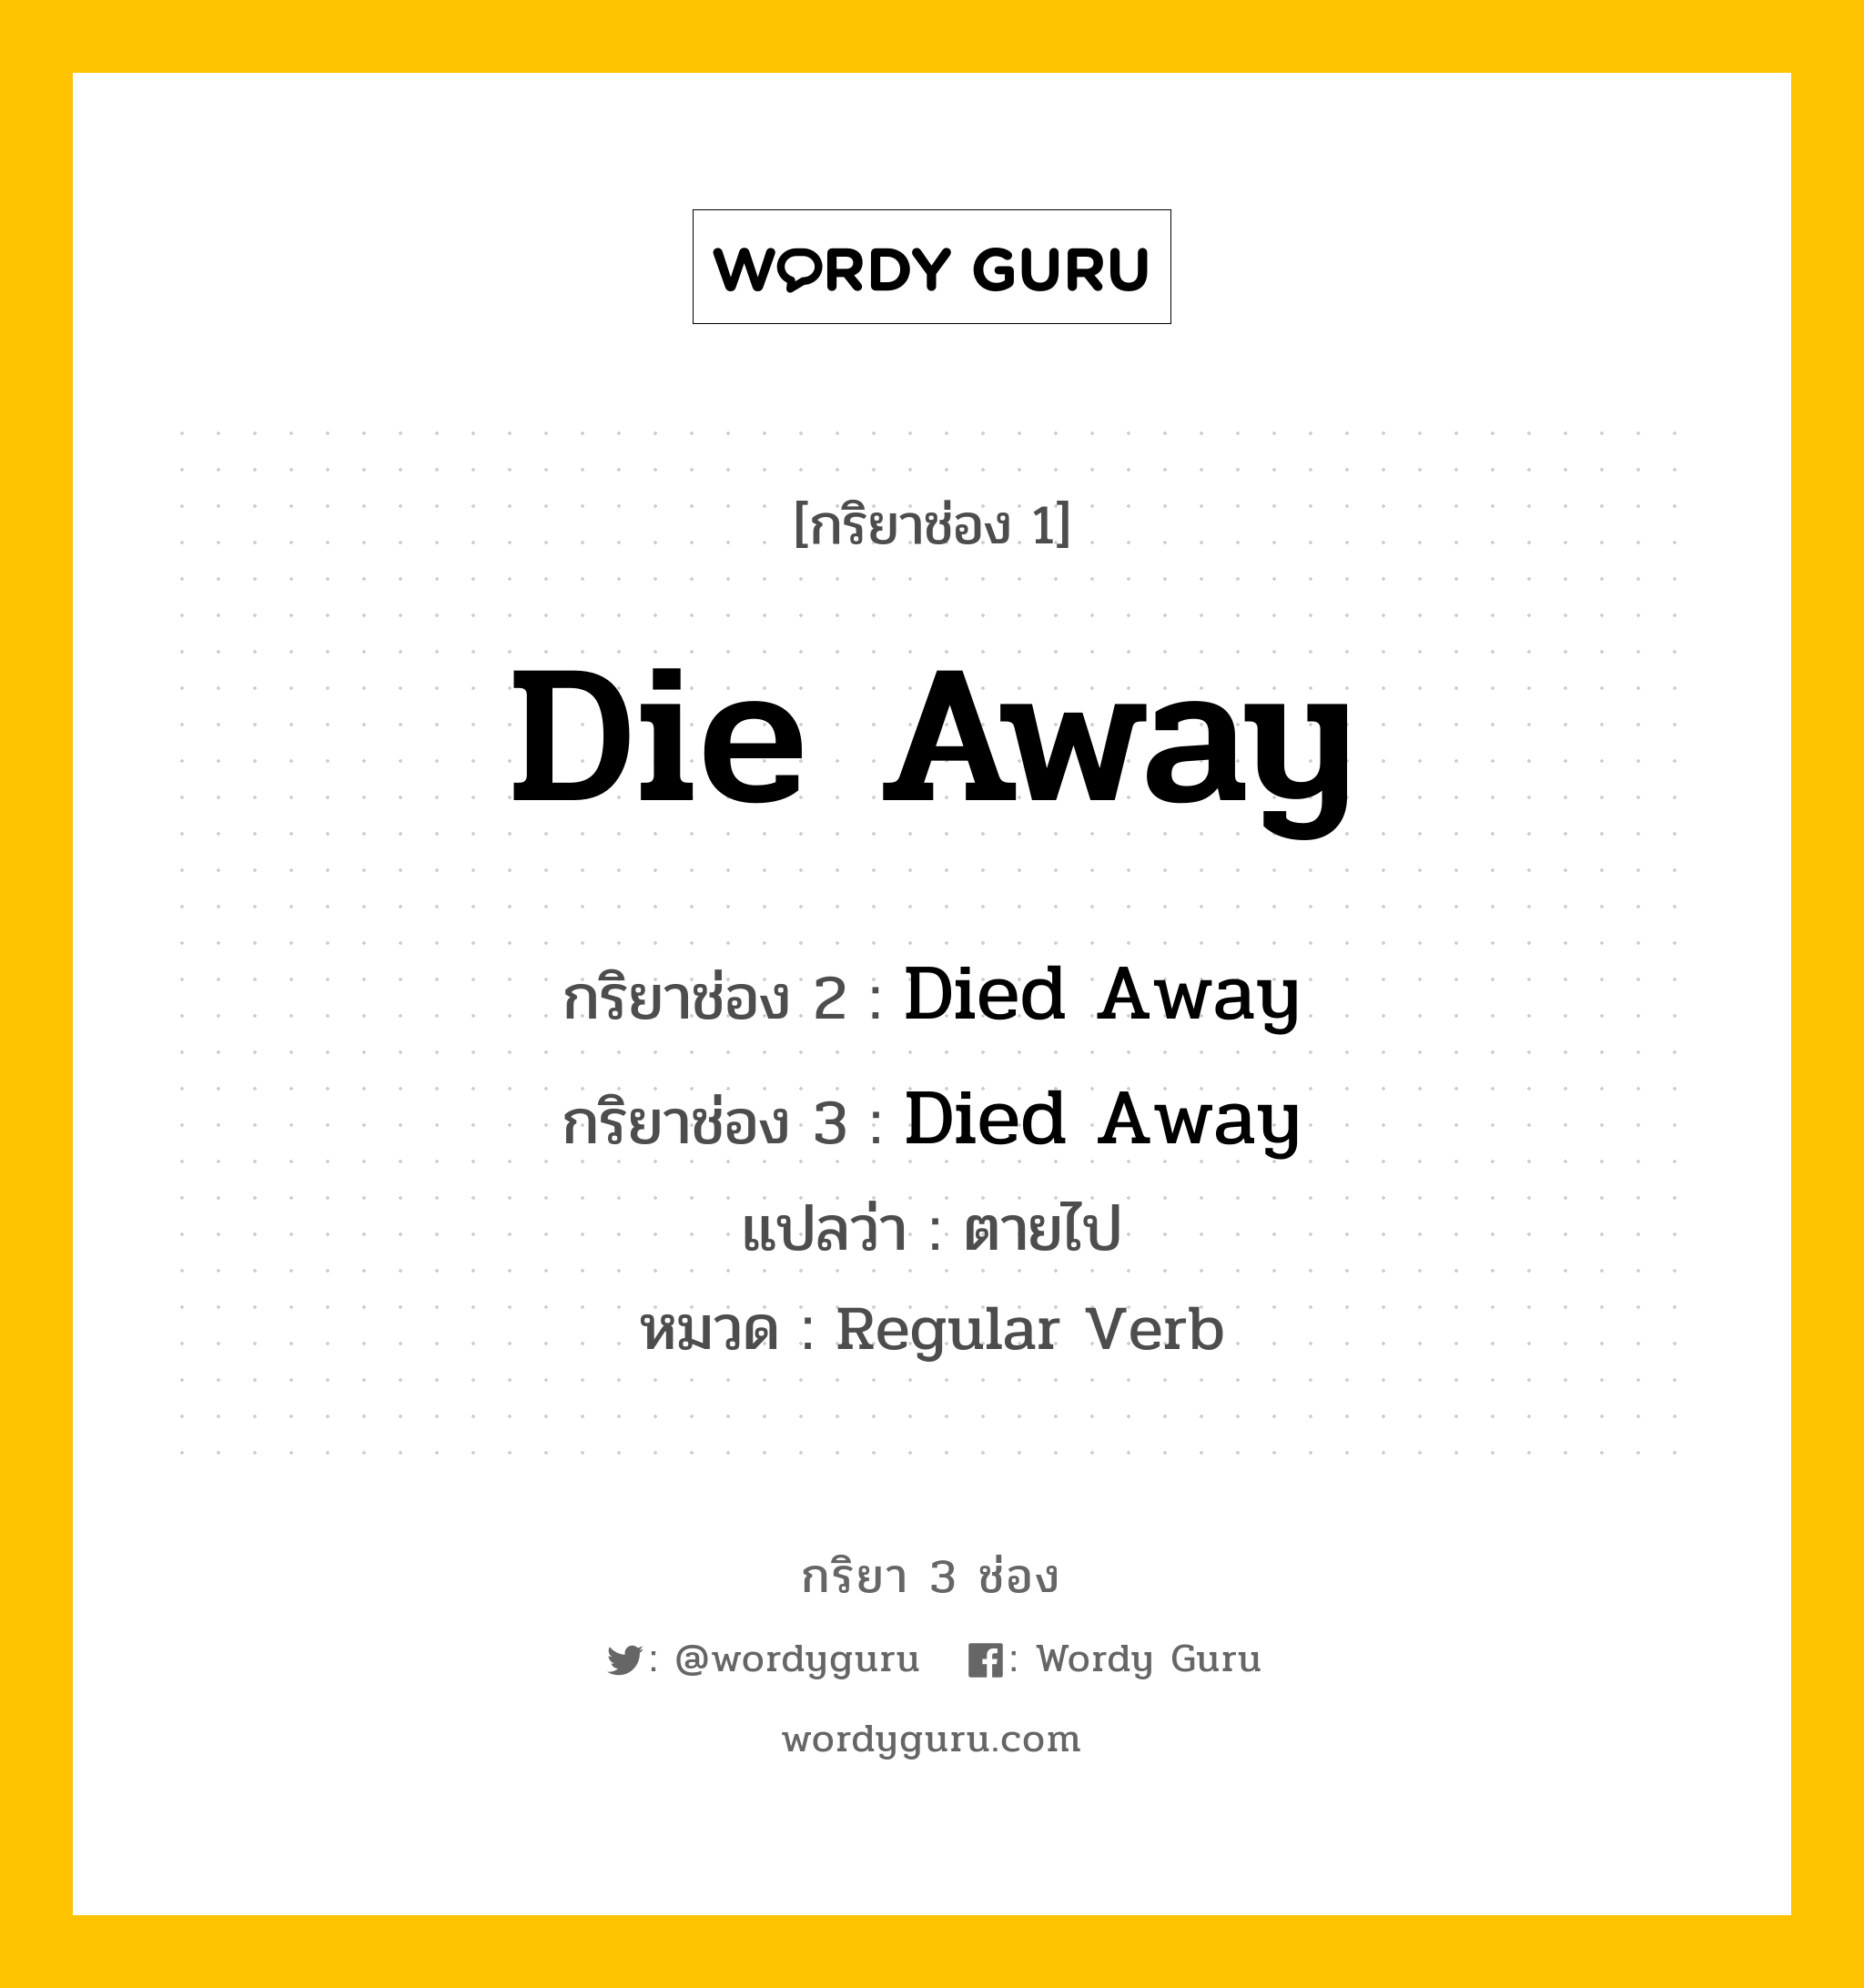 กริยา 3 ช่อง ของ Die Away คืออะไร? มาดูคำอ่าน คำแปลกันเลย, กริยาช่อง 1 Die Away กริยาช่อง 2 Died Away กริยาช่อง 3 Died Away แปลว่า ตายไป หมวด Regular Verb หมวด Regular Verb